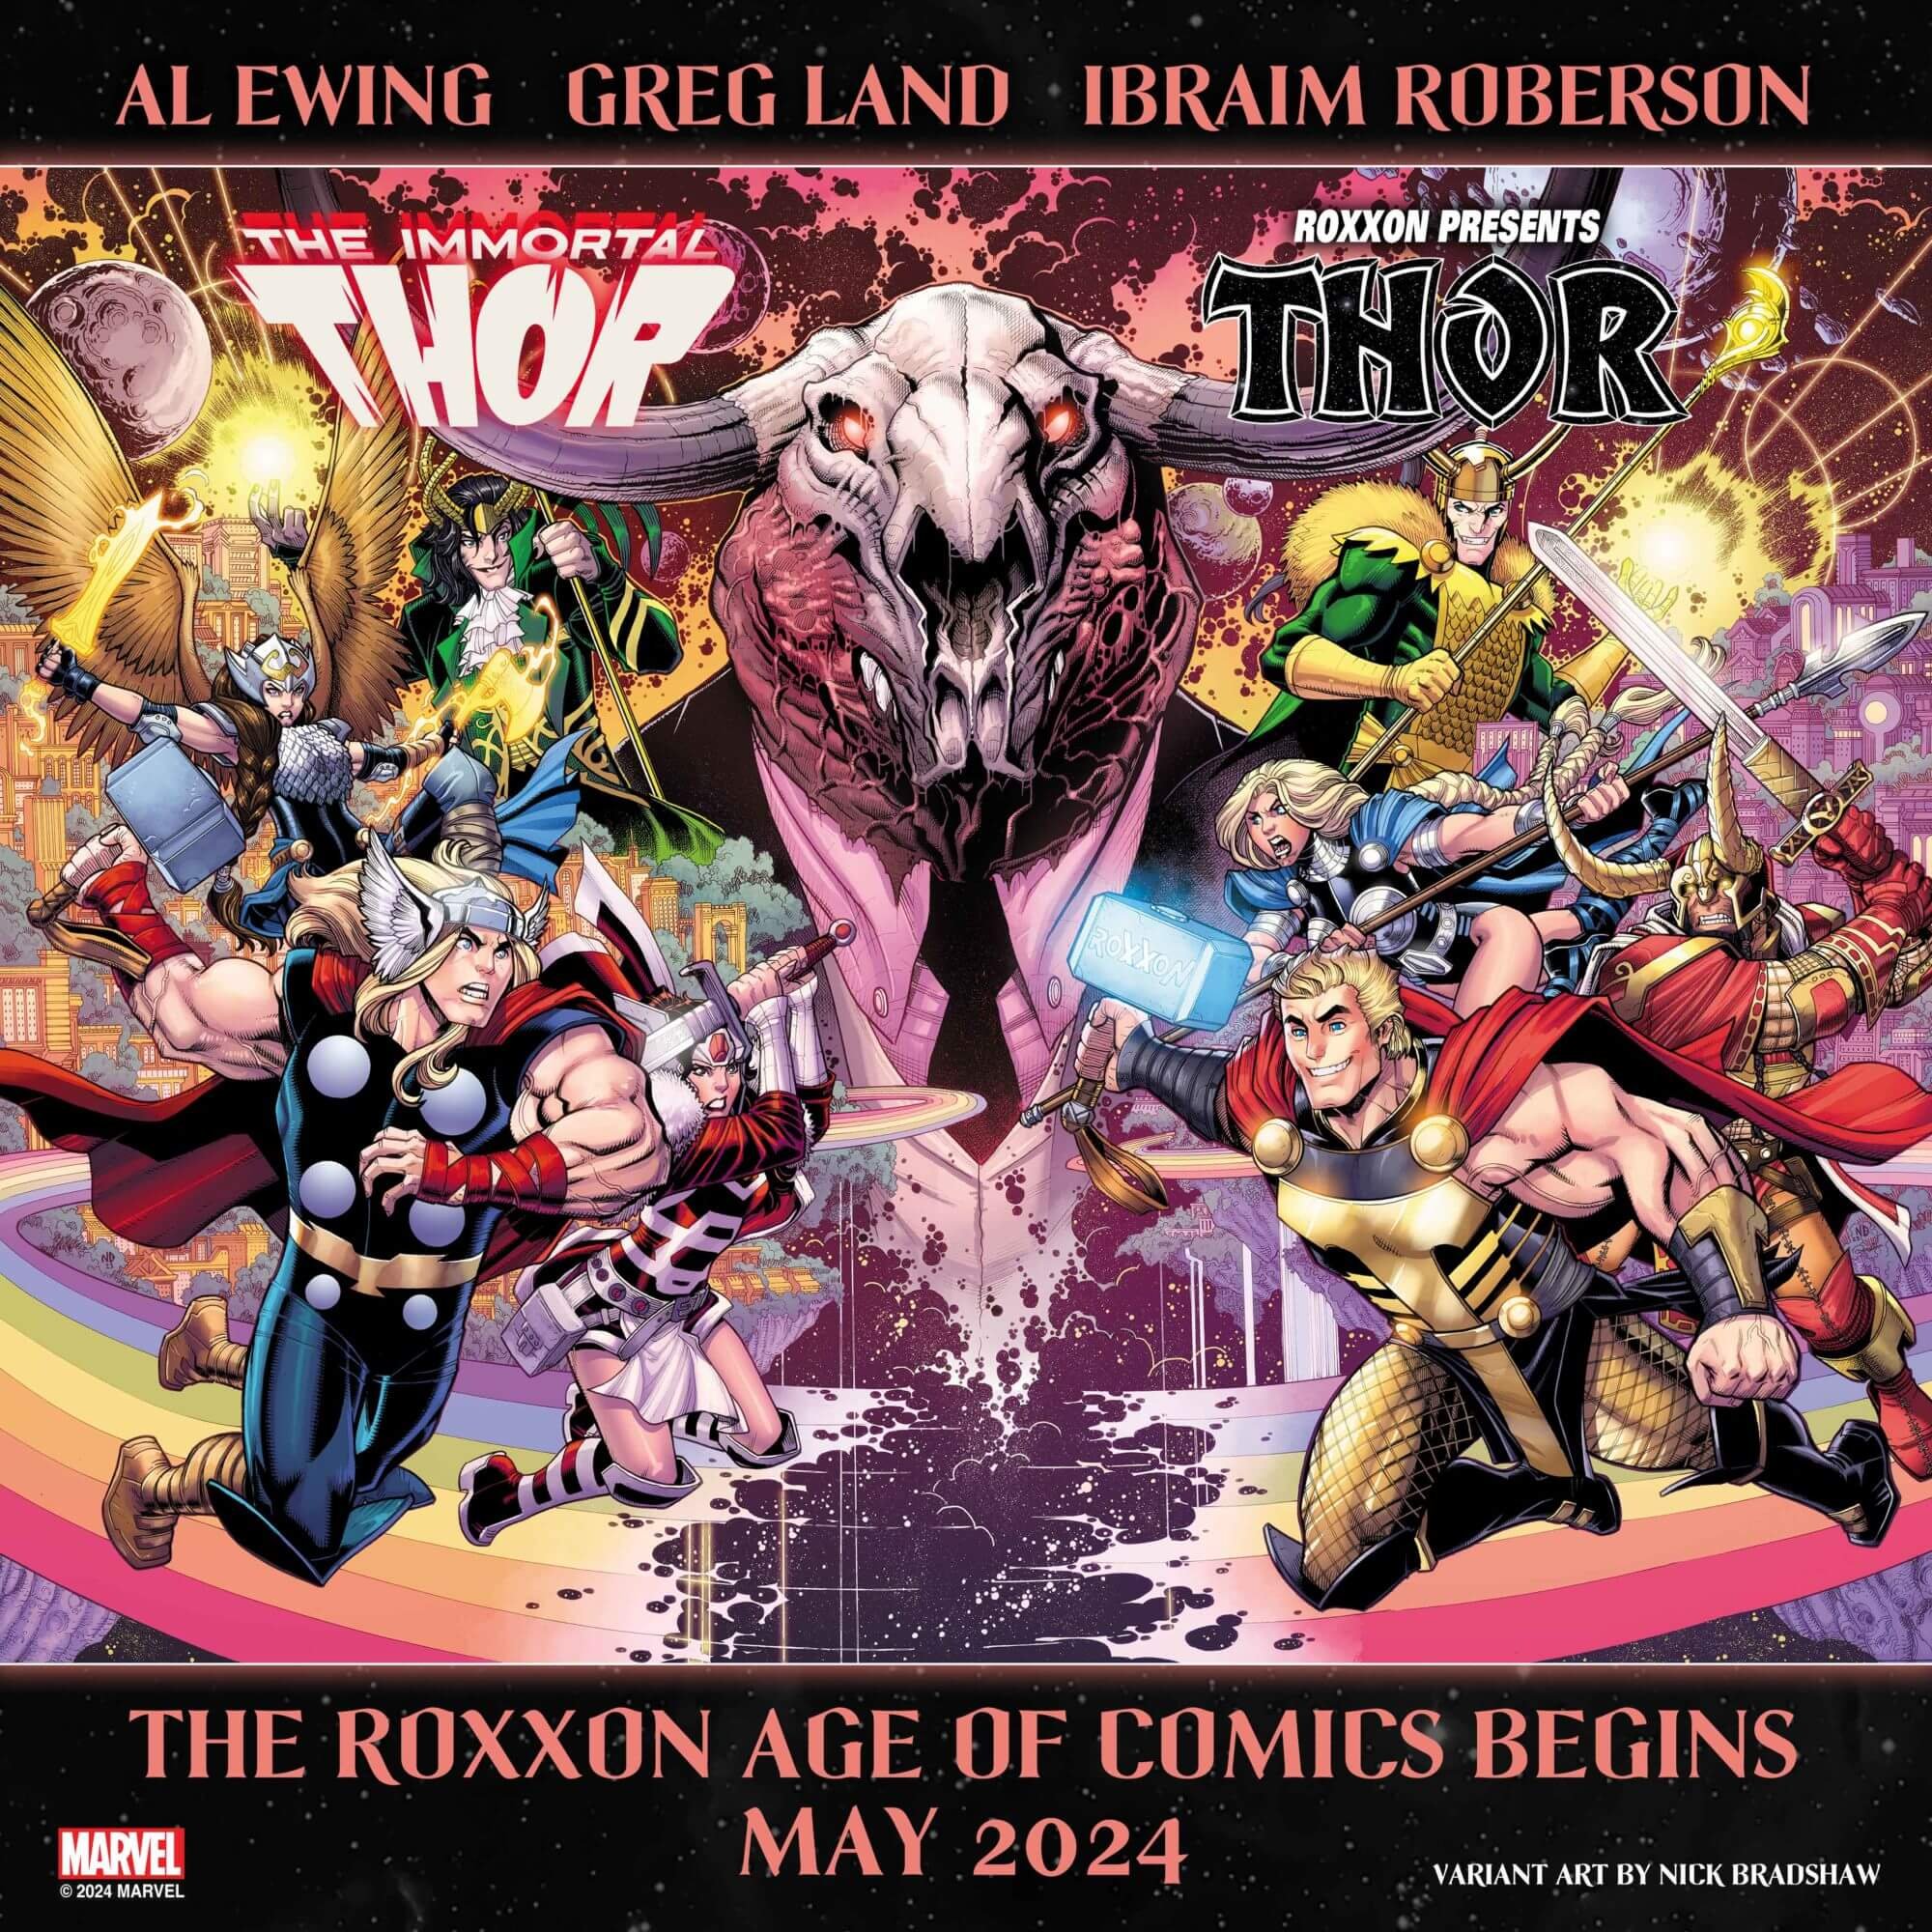 Le teaser d'Immortal Thor et de Roxxon Presents Thor par Nick Bradshaw